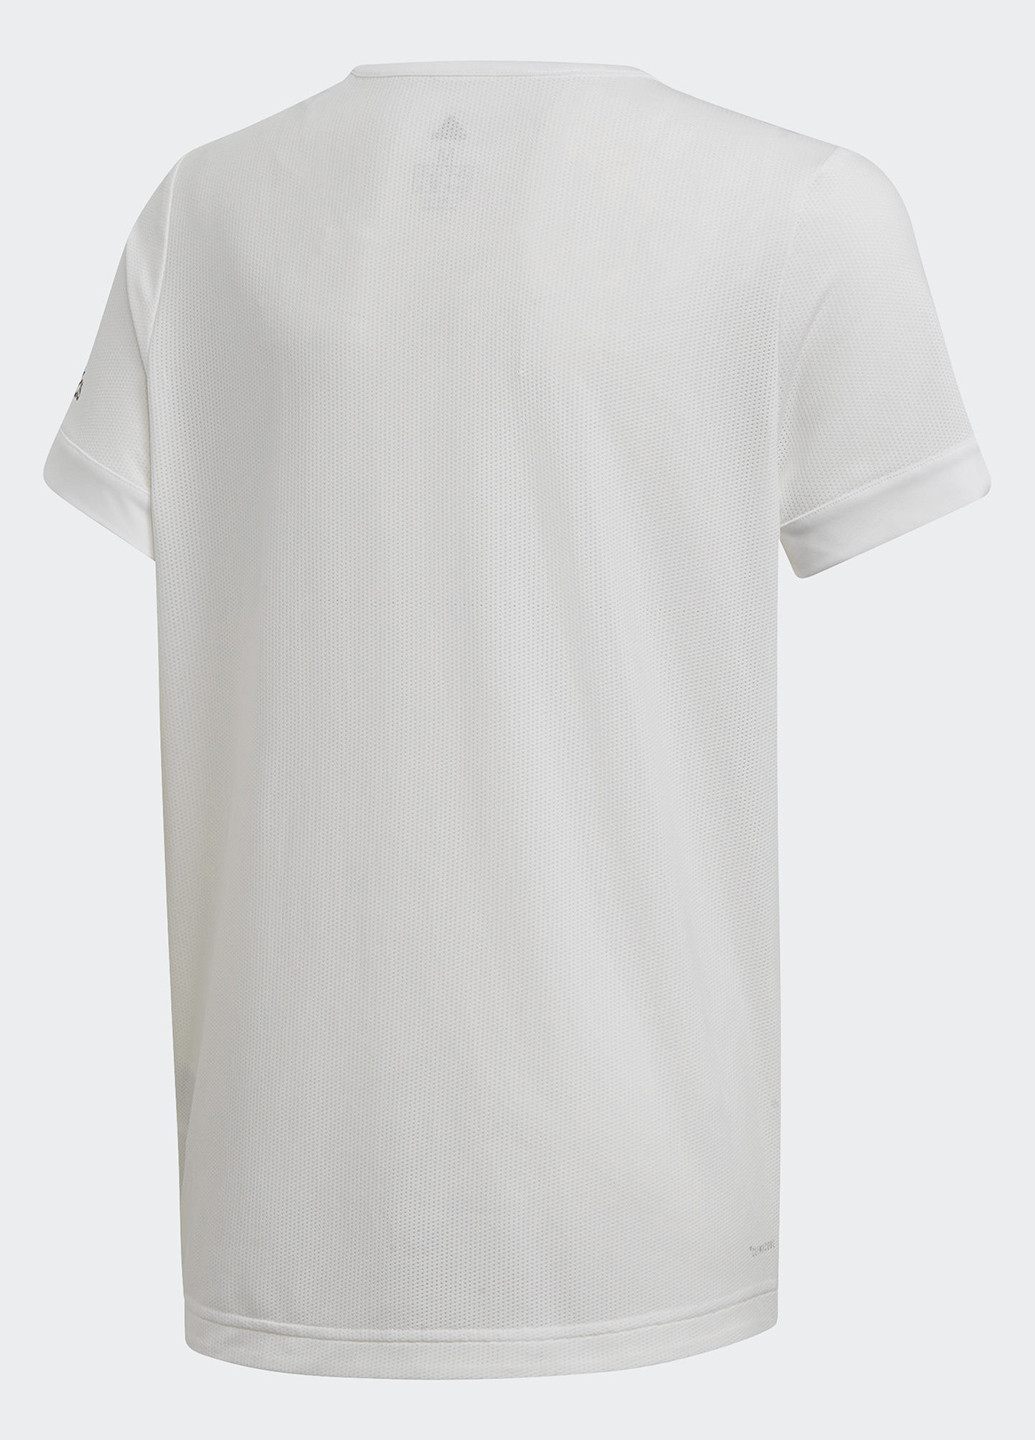 Біла демісезонна футболка з коротким рукавом adidas